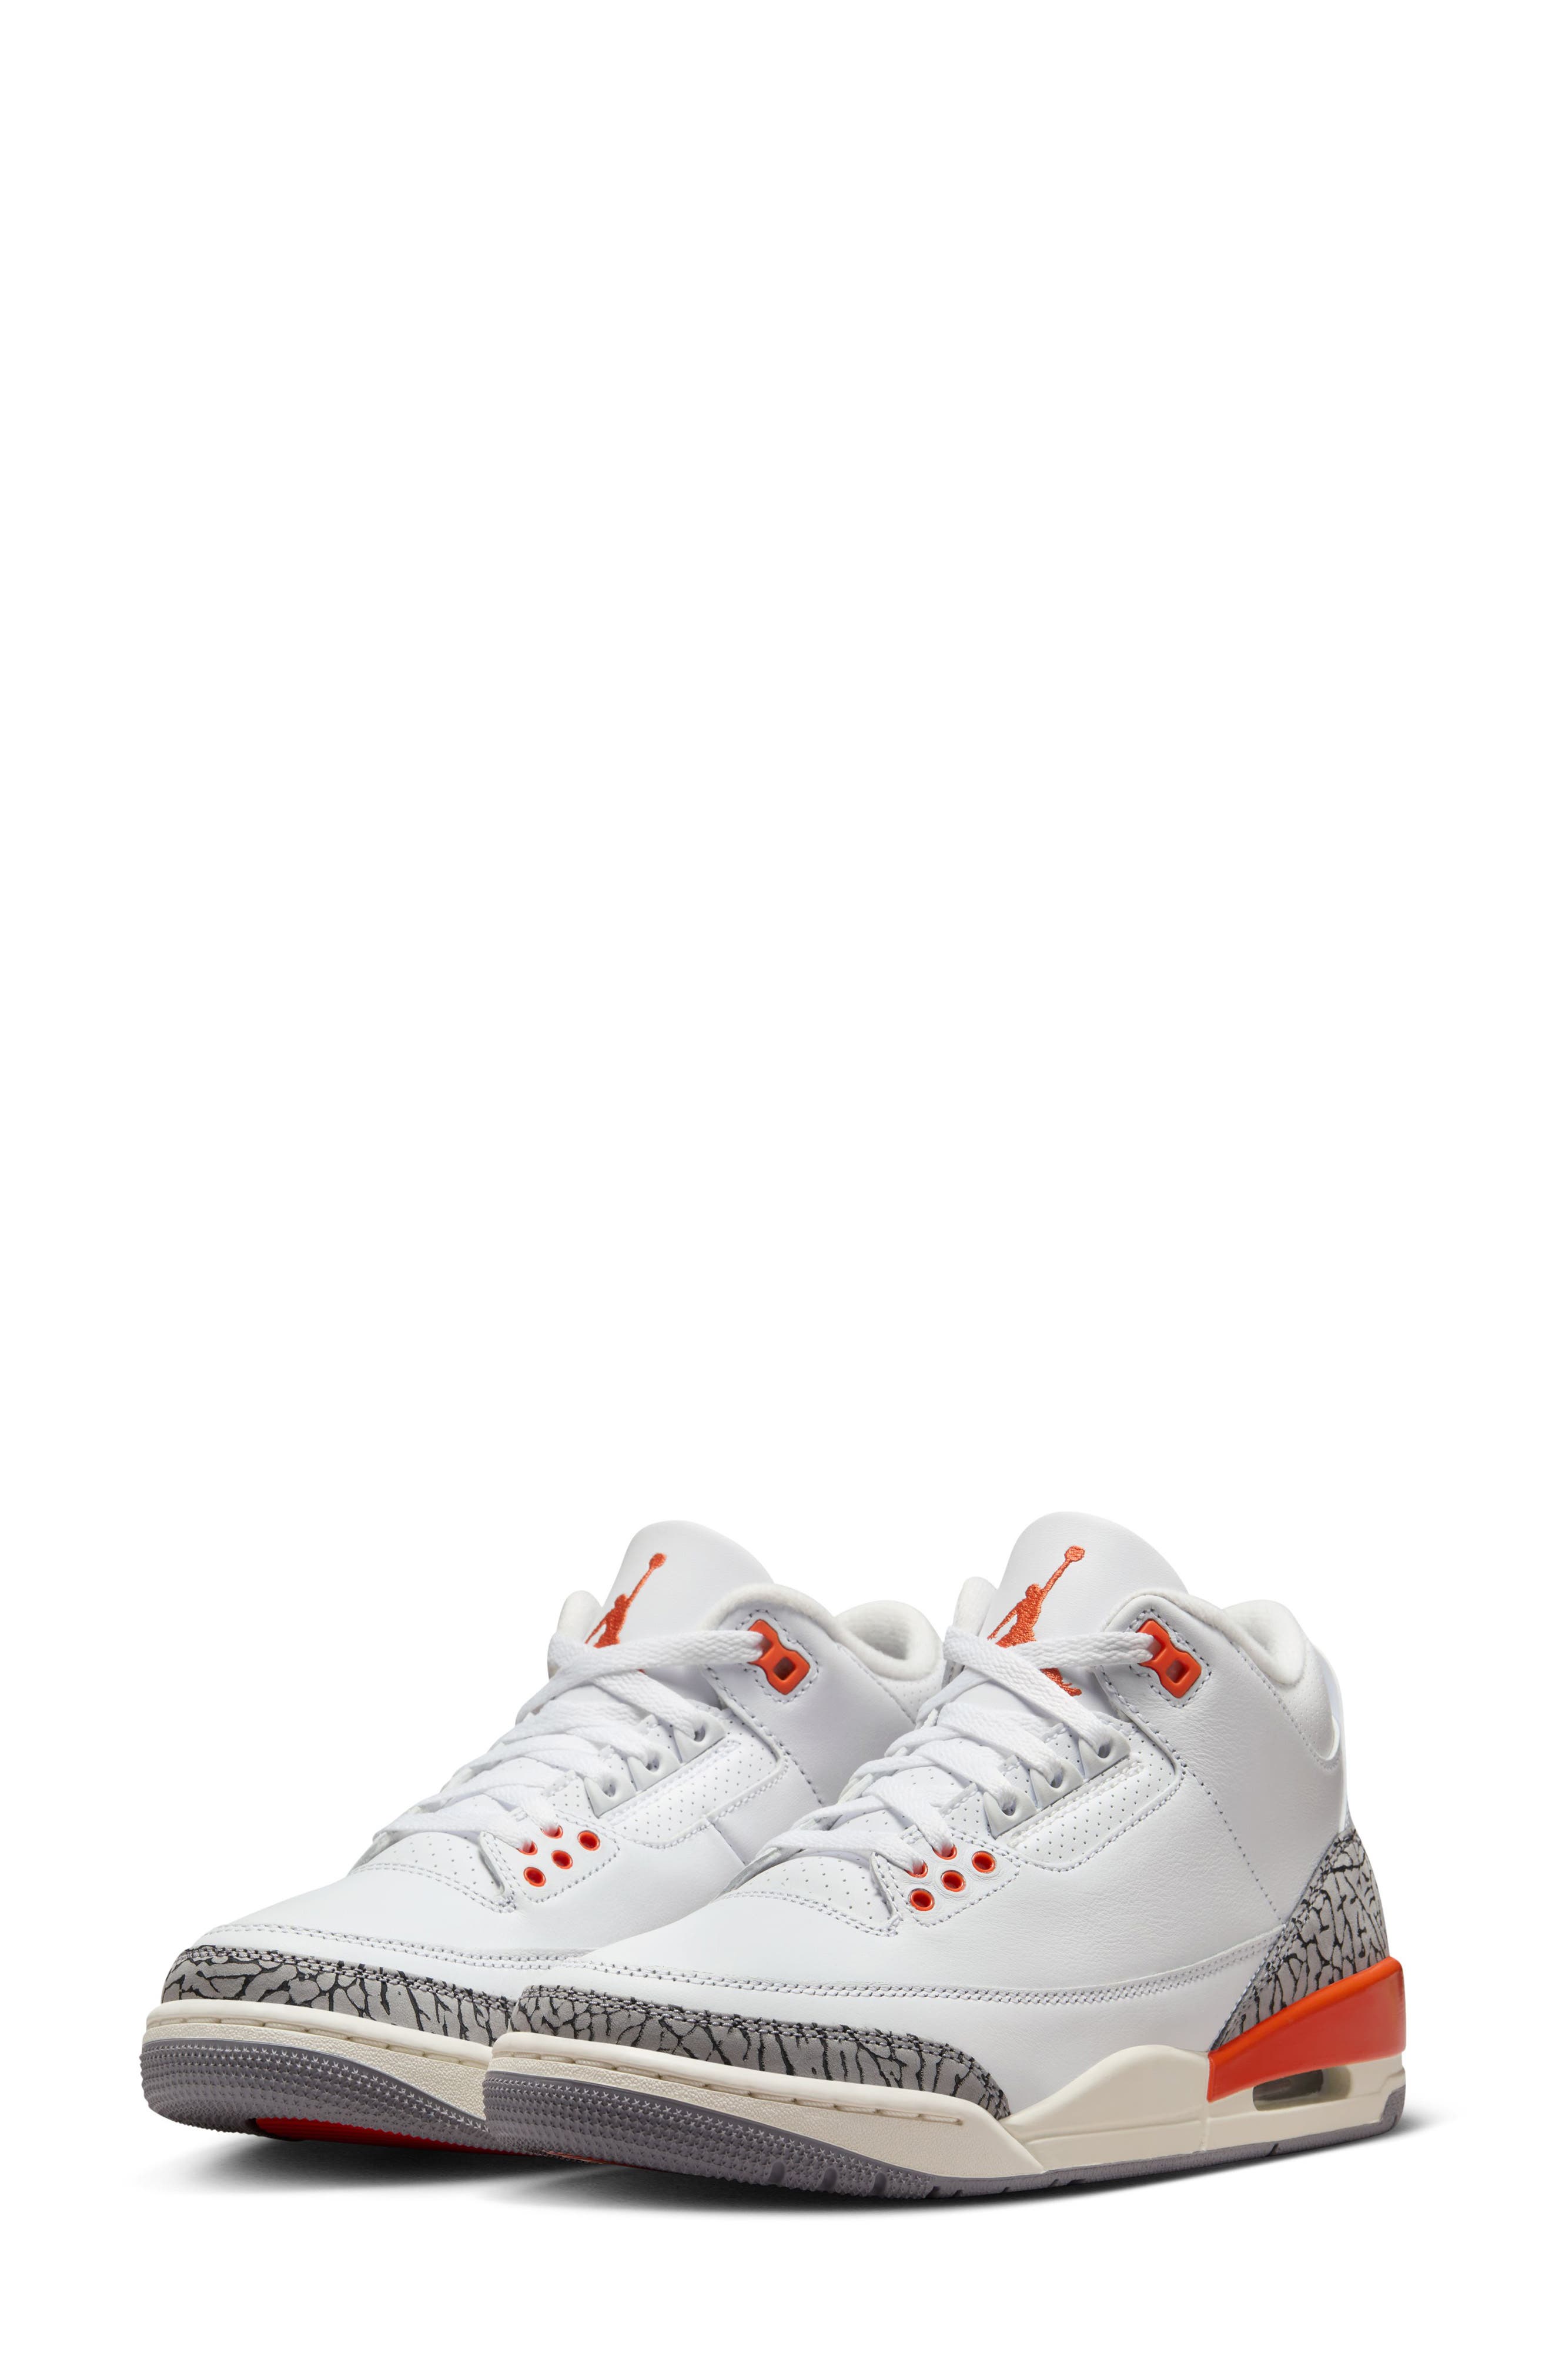 Air Jordan 3 Retro Basketball Sneaker